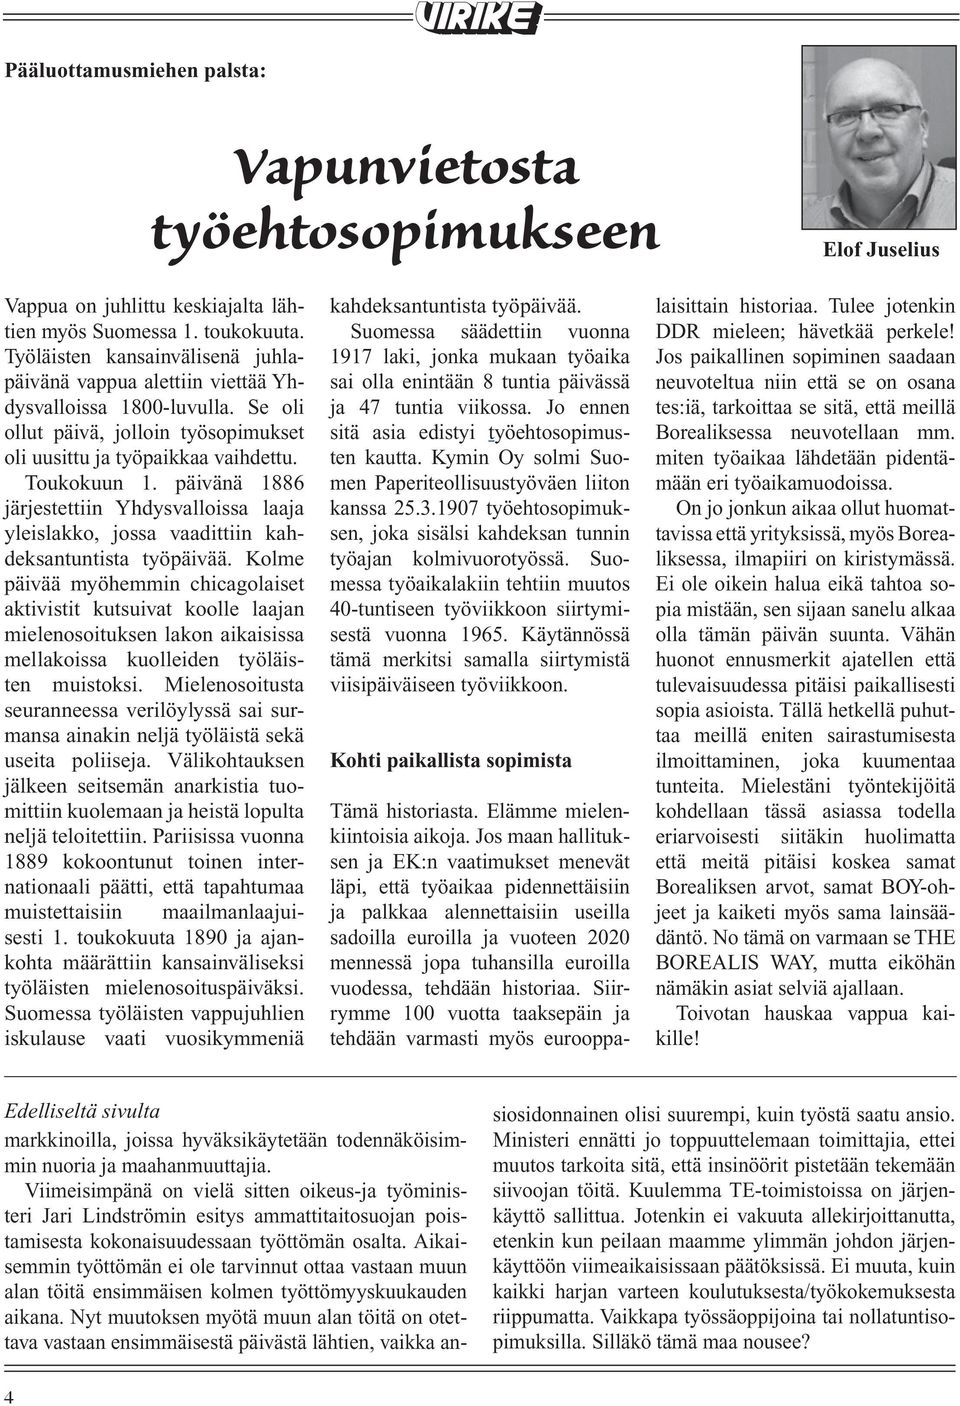 Toimipaikkapäällikkö Suomessa säädettiin Hannu Luoto vuonna ei vastauksessaan tämän kahdeksantuntista lehden pääluottamusmiehen työpäivää. palstalla laisittain sivulla historiaa. neljä.